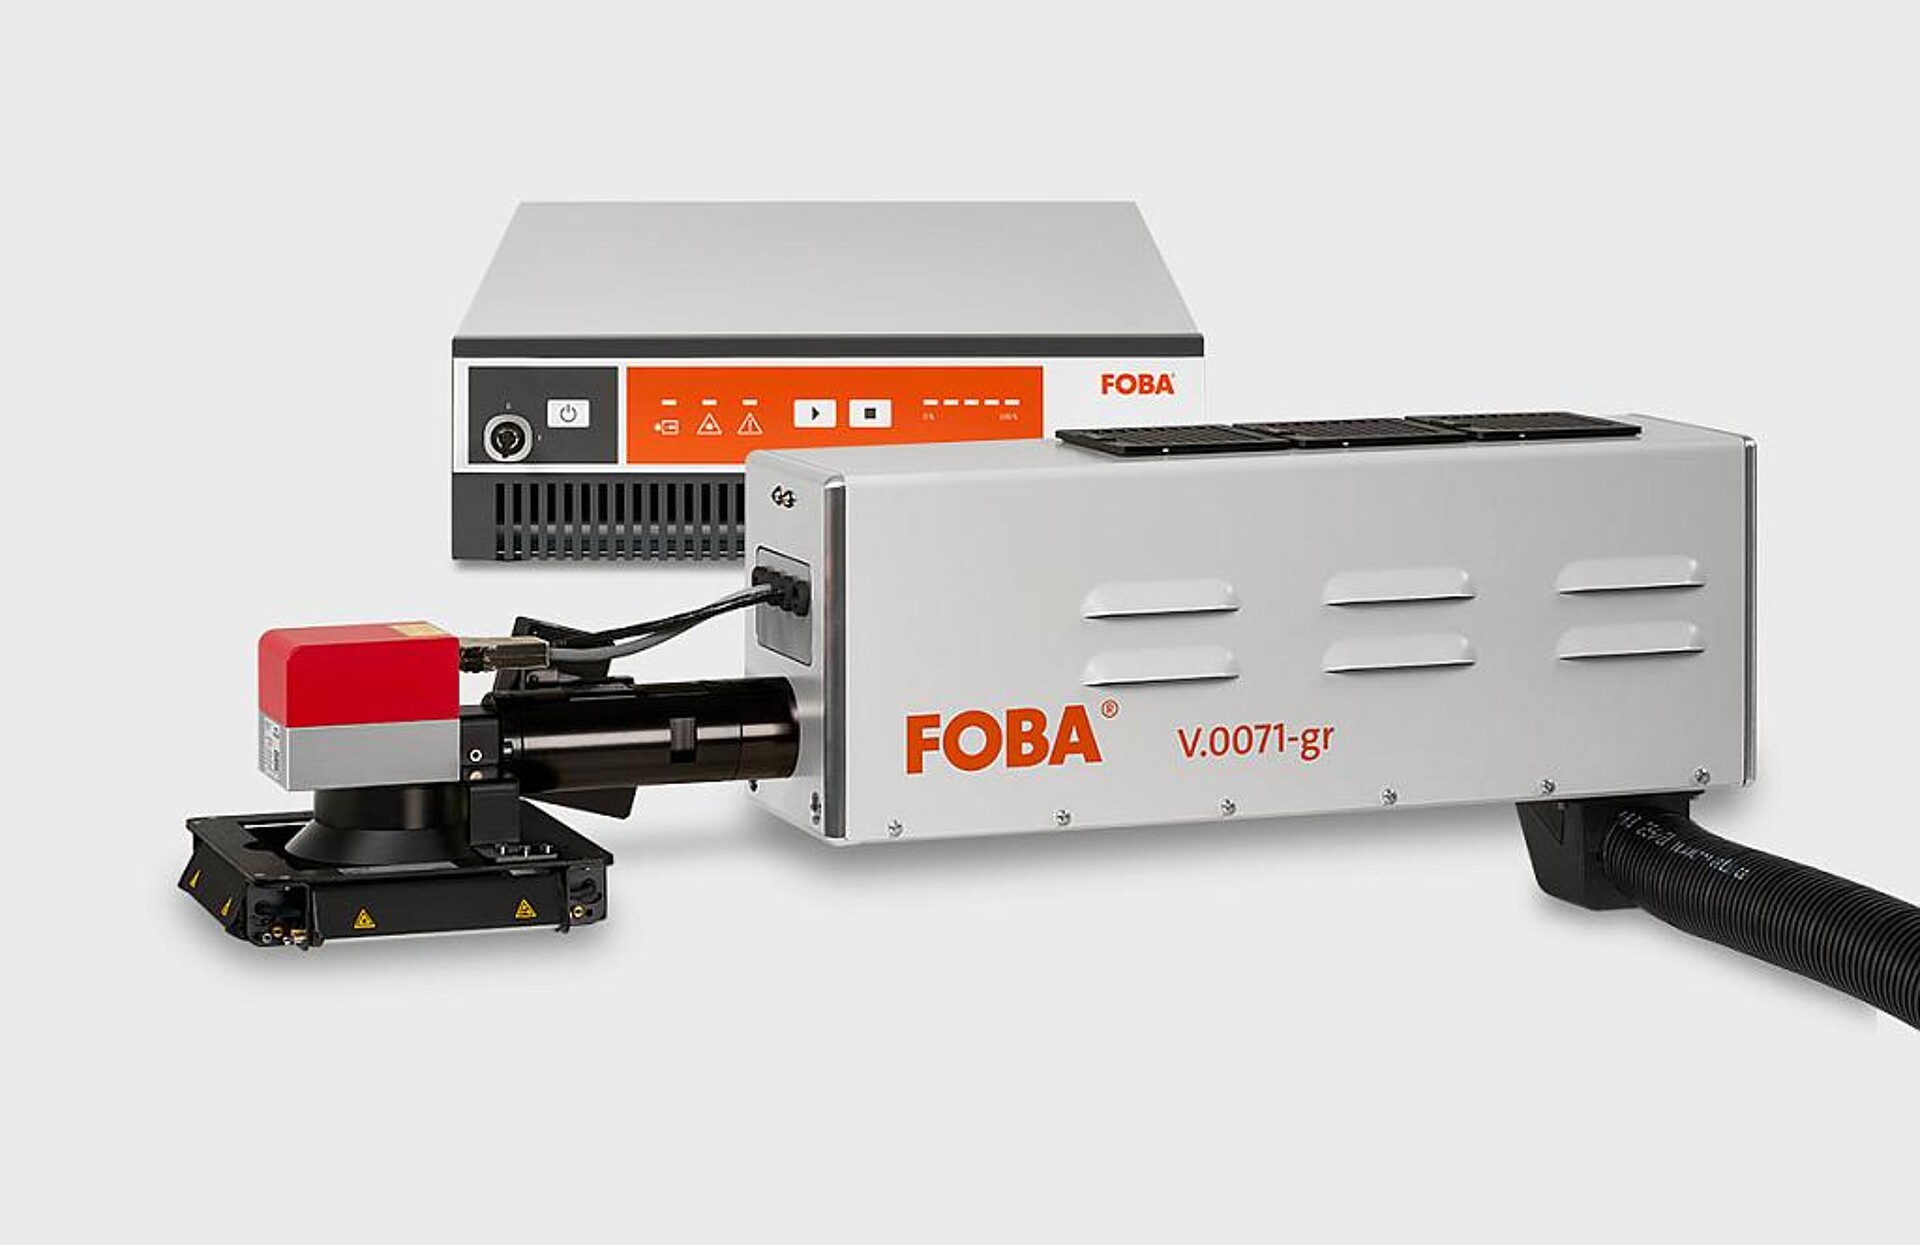 Das Lasermarkiersystem Foba V.0071-gr mit 7 W Leistung entspricht der Laserschutzklasse 4 und wird daher mit Einhausung oder integriert in eine Anlage betrieben. (Foto: Foba)